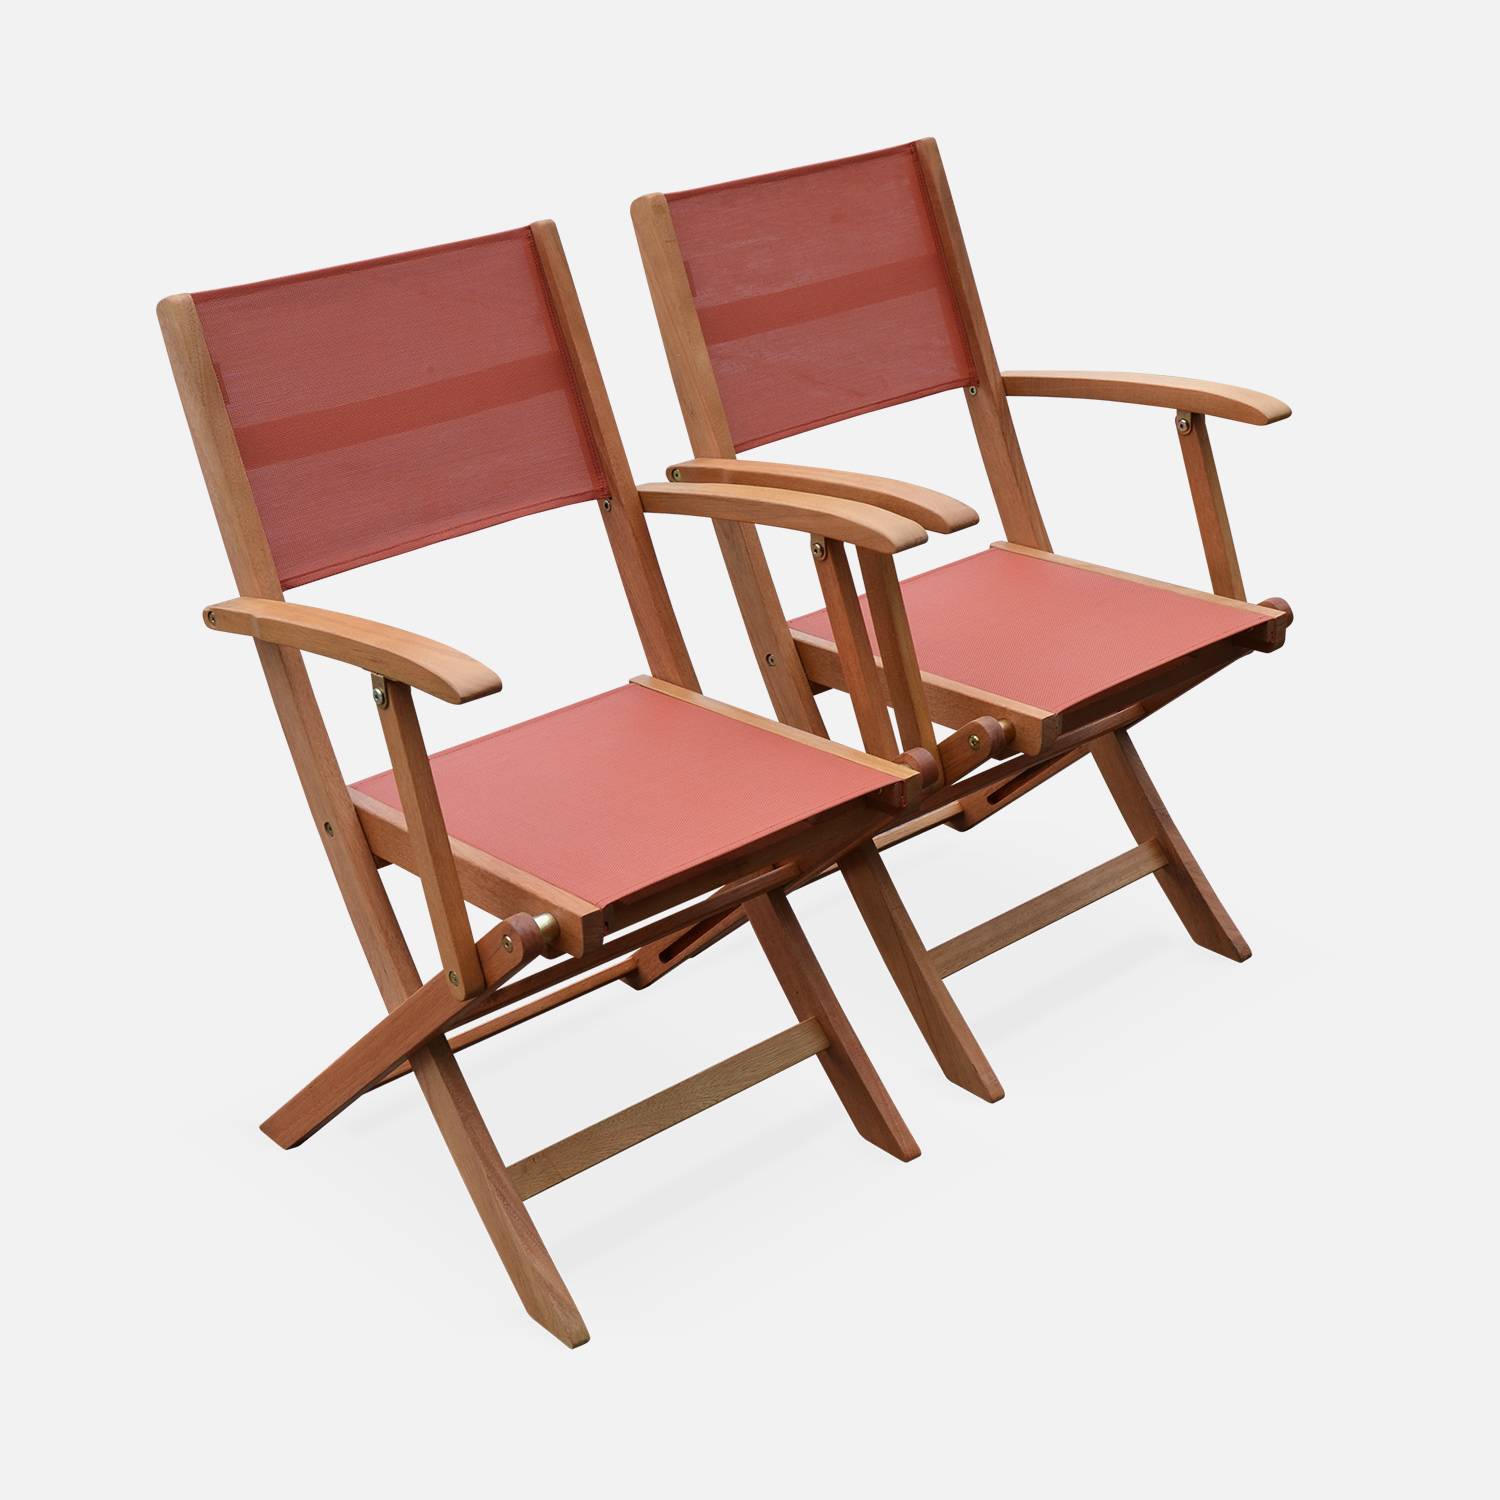 Fauteuils de jardin en bois et textilène - Almeria Terra cotta - 2 fauteuils pliants en bois d'Eucalyptus FSC huilé et textilène Photo3